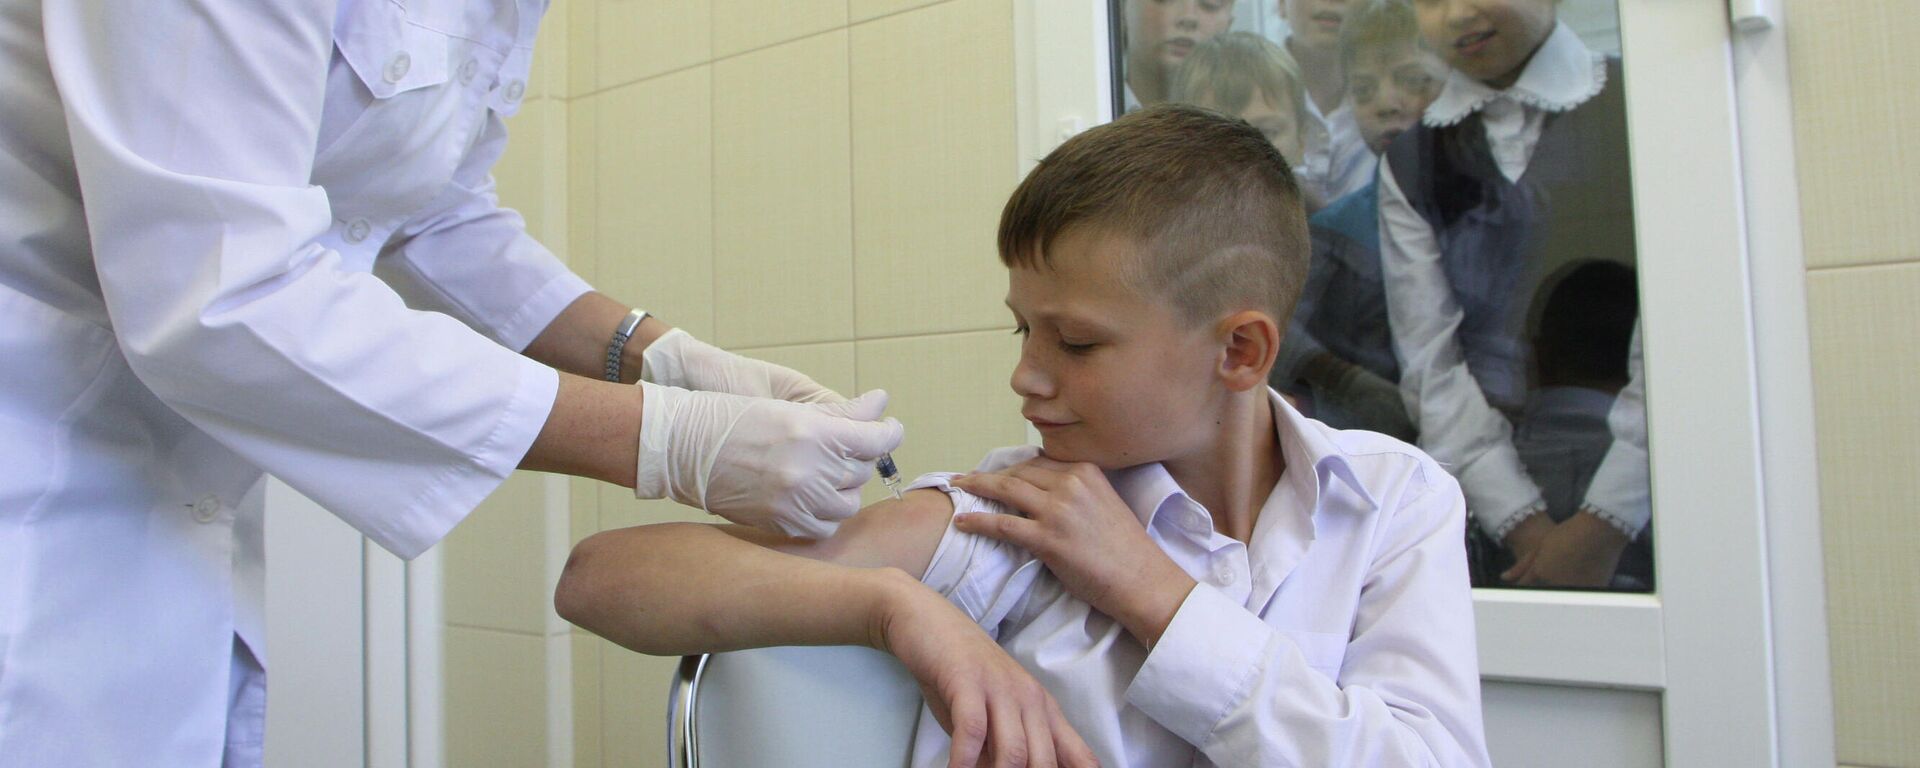 Вакцинация ребенка против гриппа - Sputnik Азербайджан, 1920, 13.01.2022